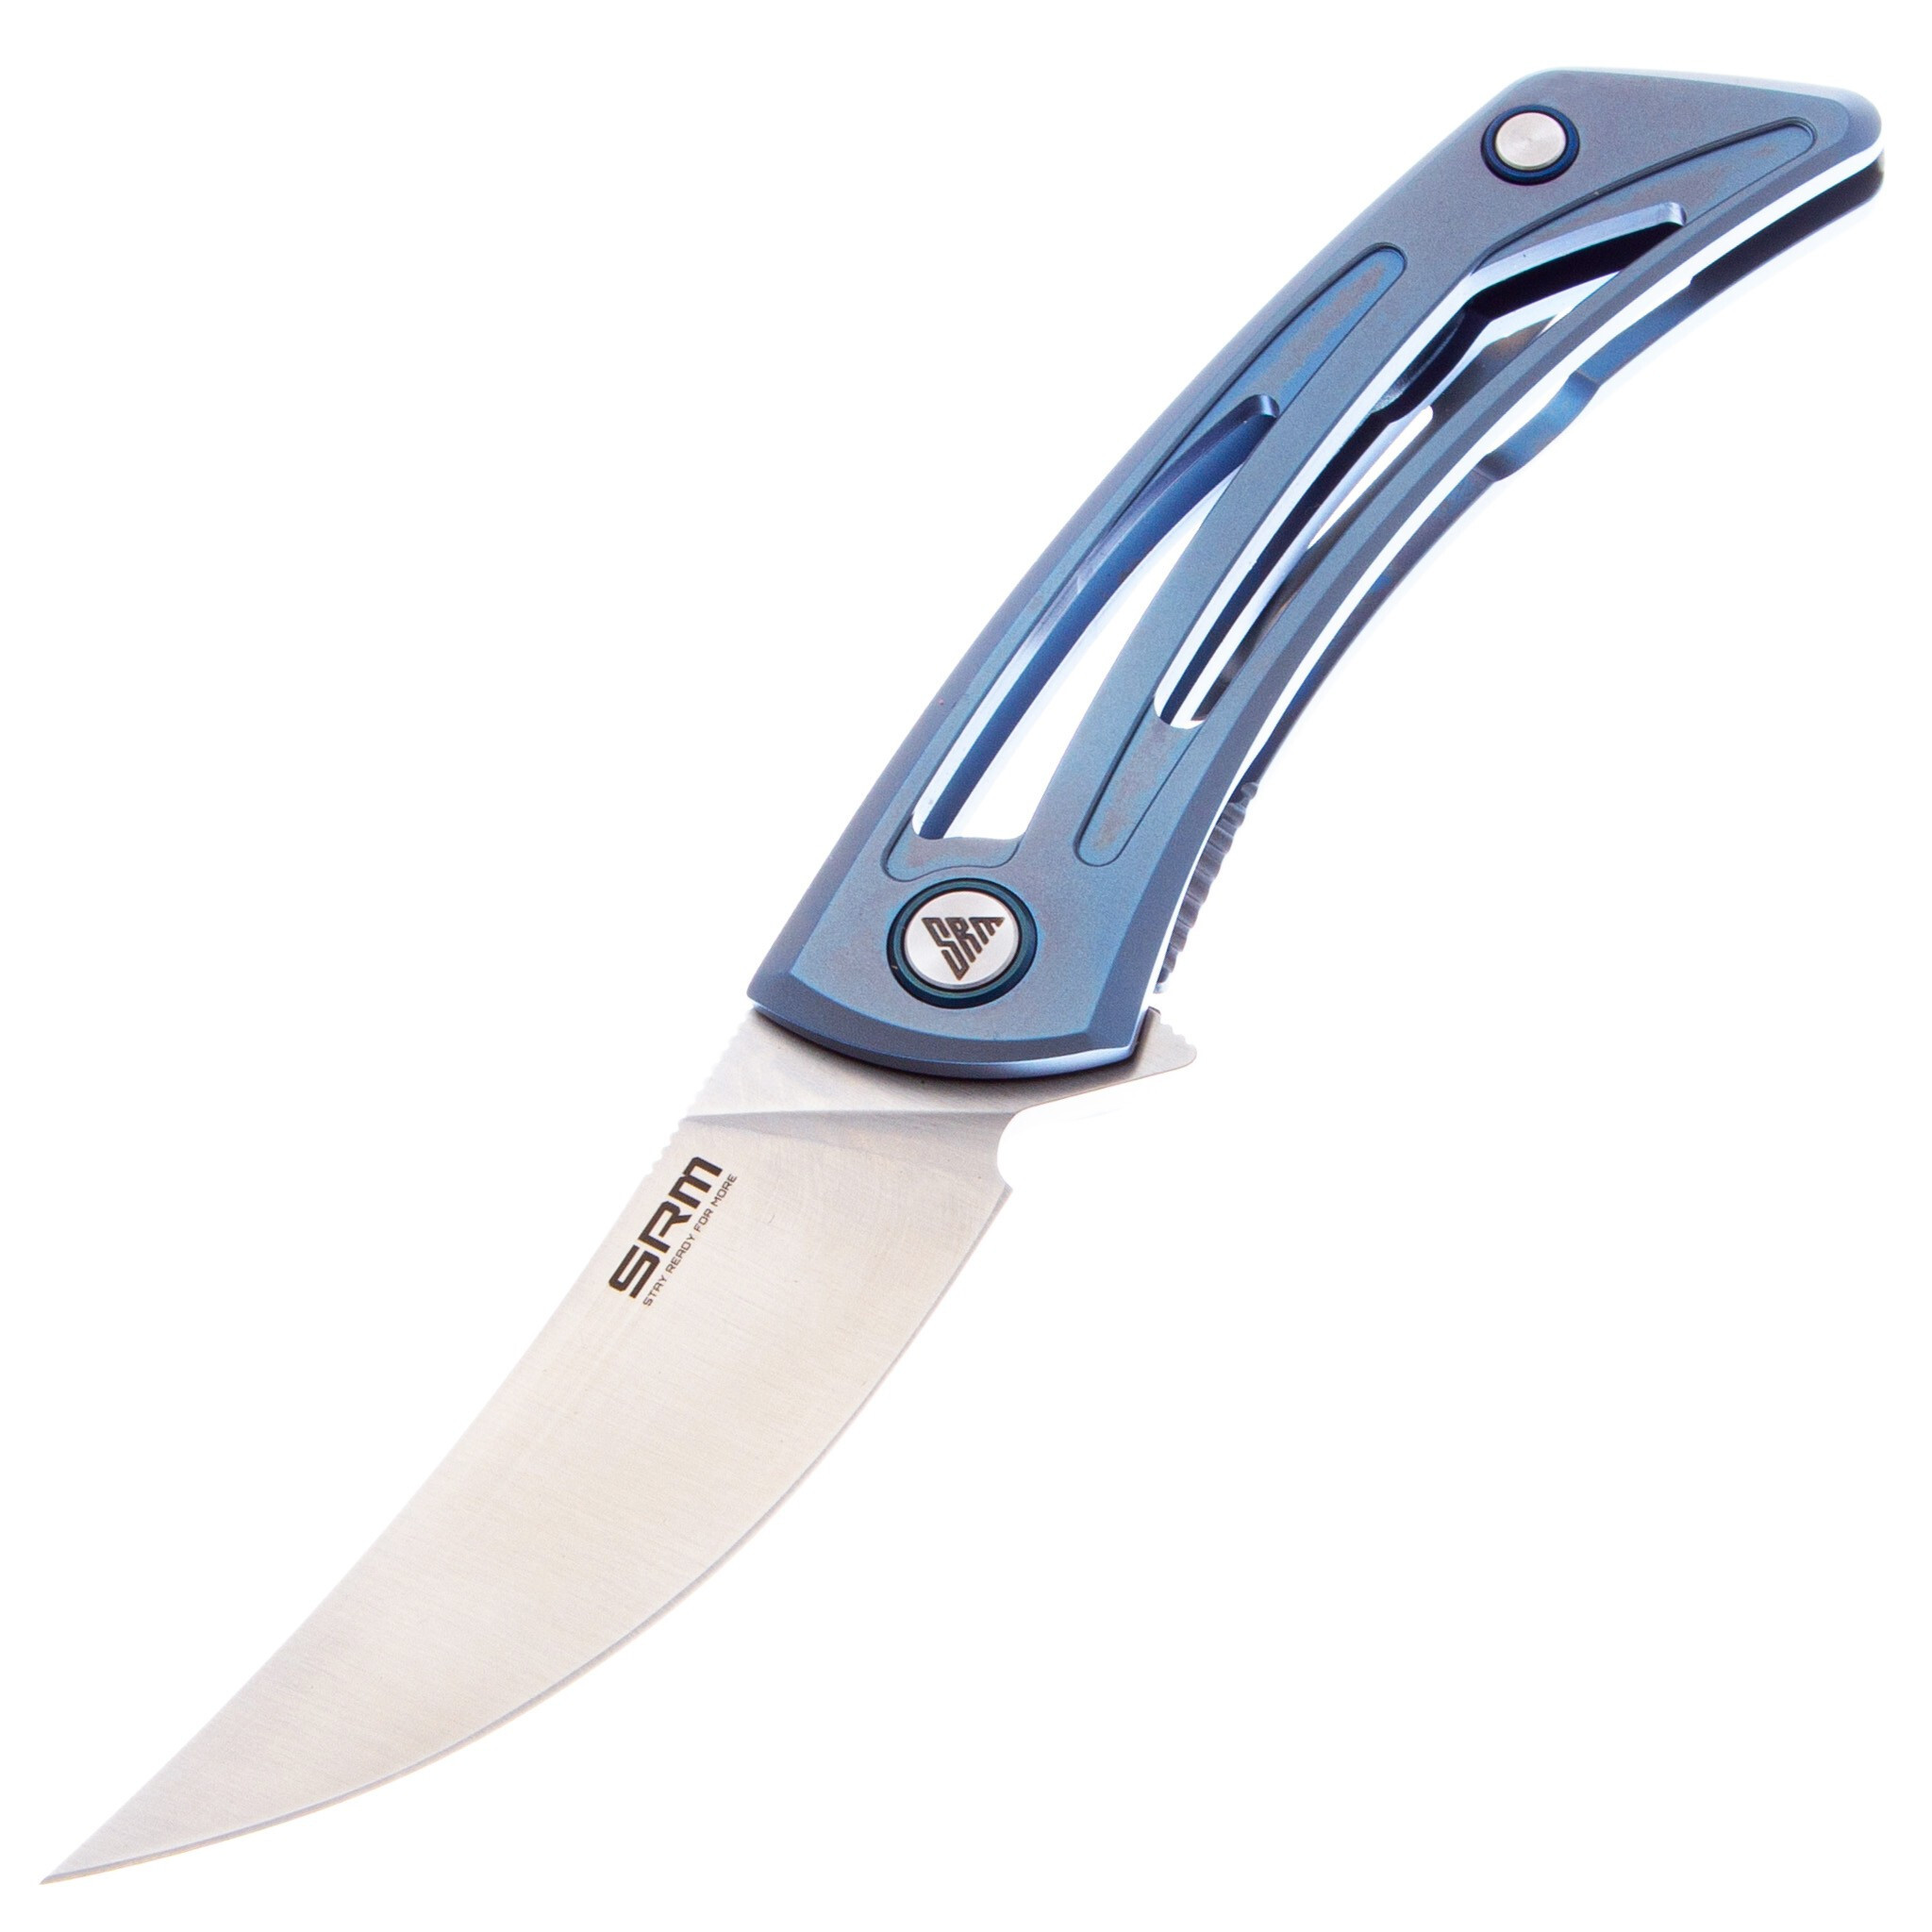 Складной нож SRM Unicorn, сталь 154CM, рукоять титан, синий нож складной ruike p105 черно серо синий